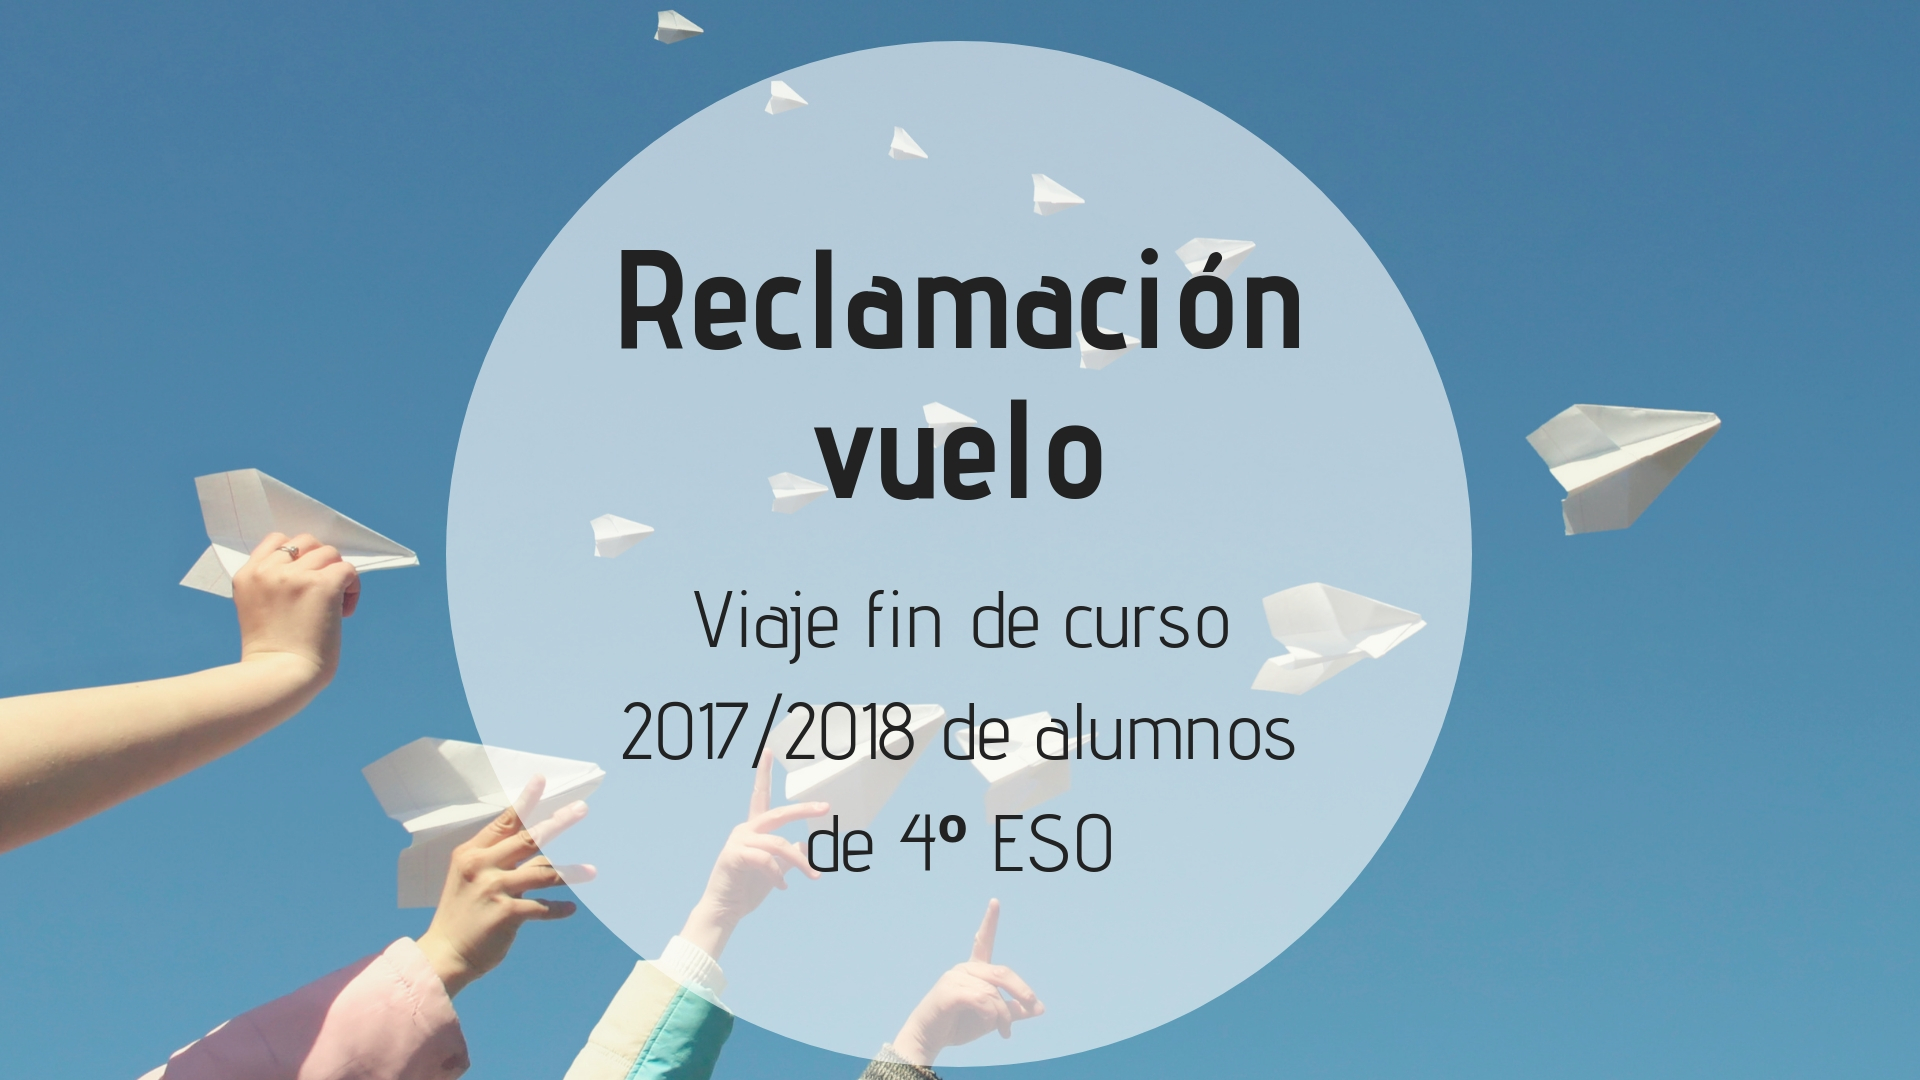 Reclamación vuelo del viaje de fin de curso de 4º de ESO en el curso escolar 2017/2018